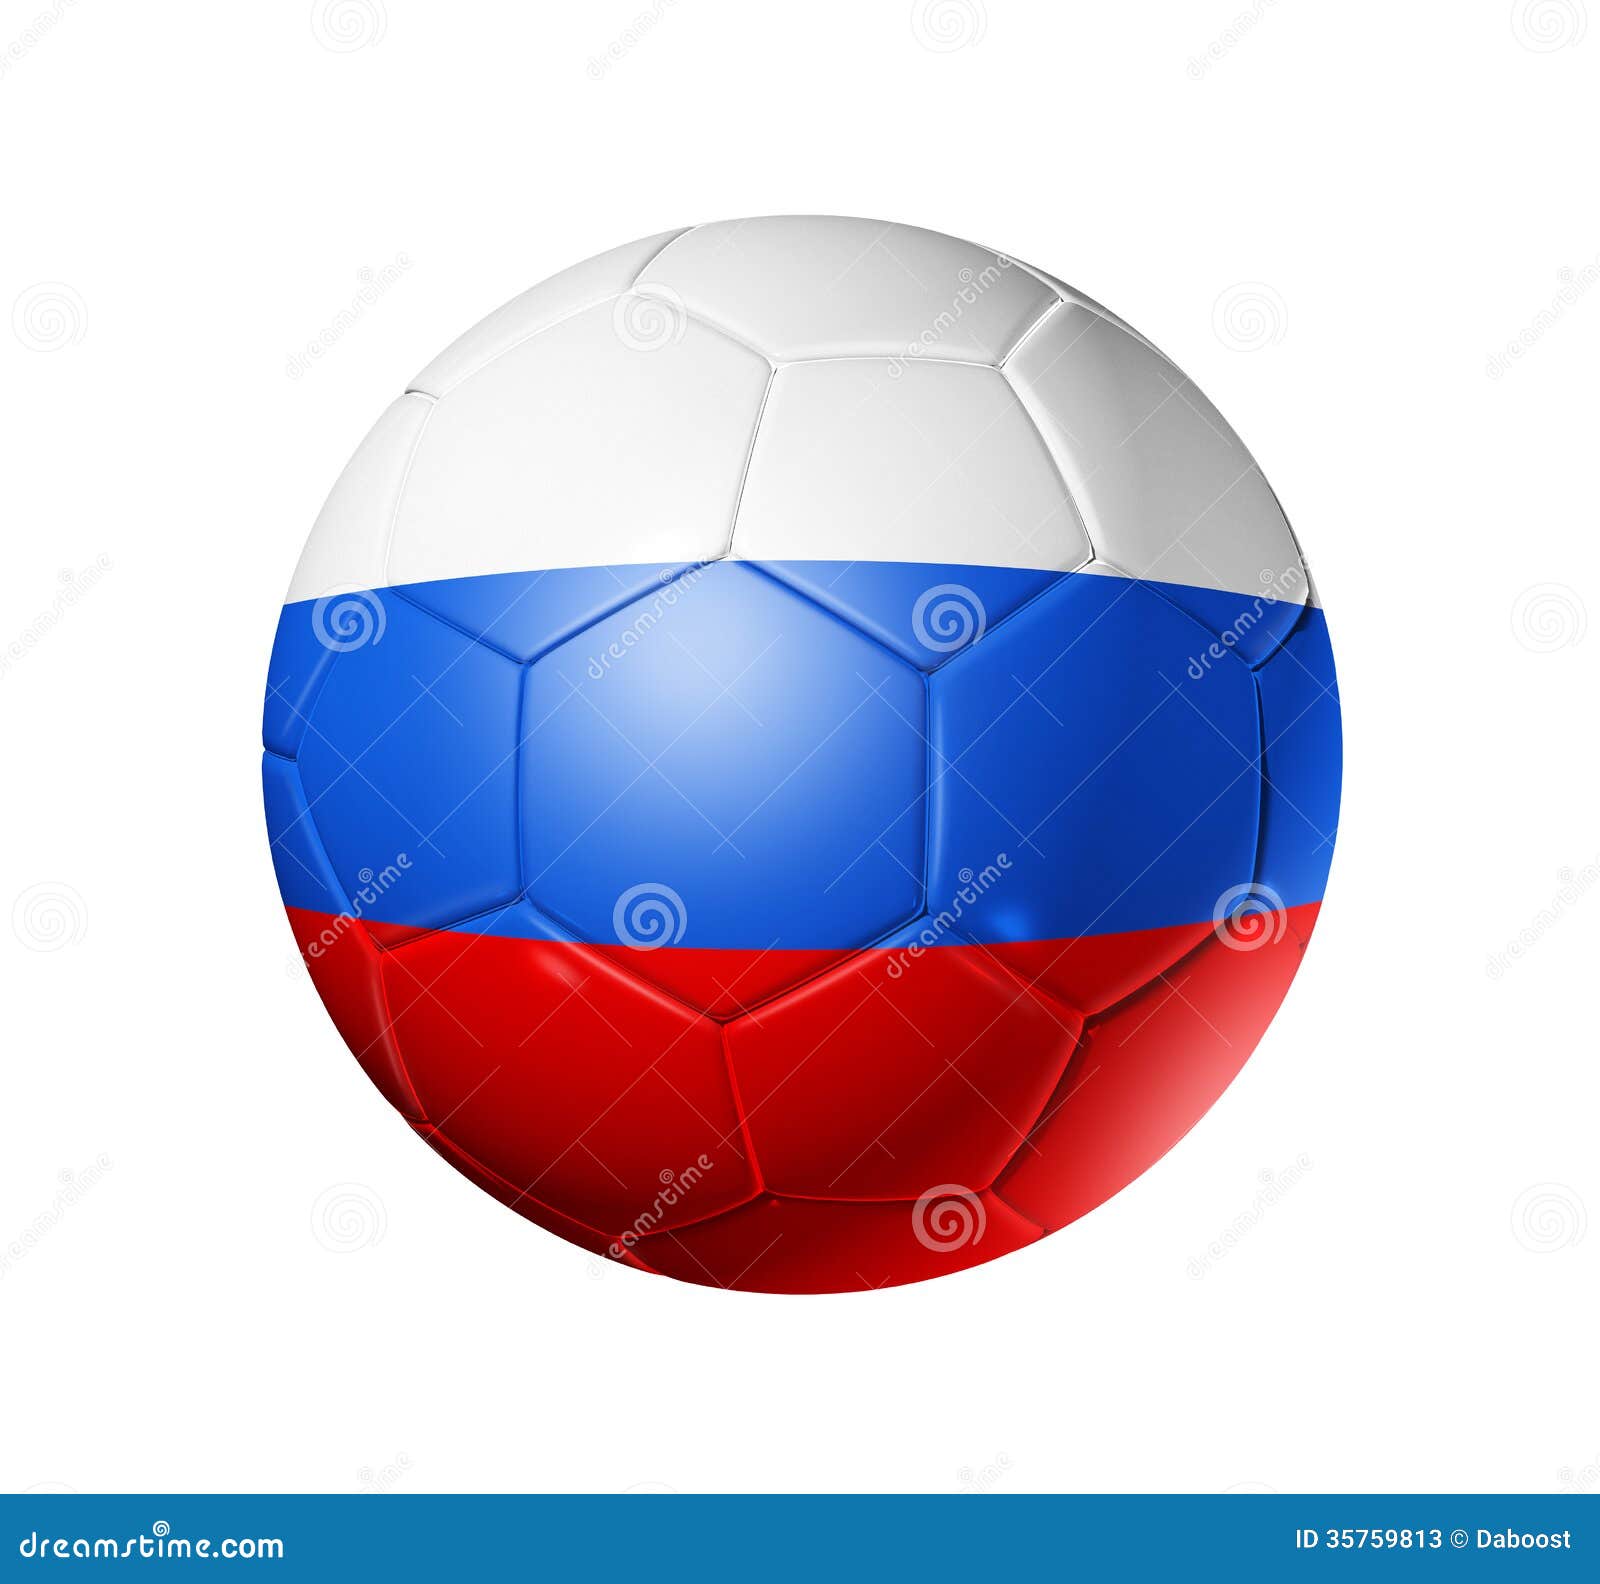 Maquete de bola de futebol de futebol realista com ilustração vetorial 3d  de bandeira da federação russa isolada